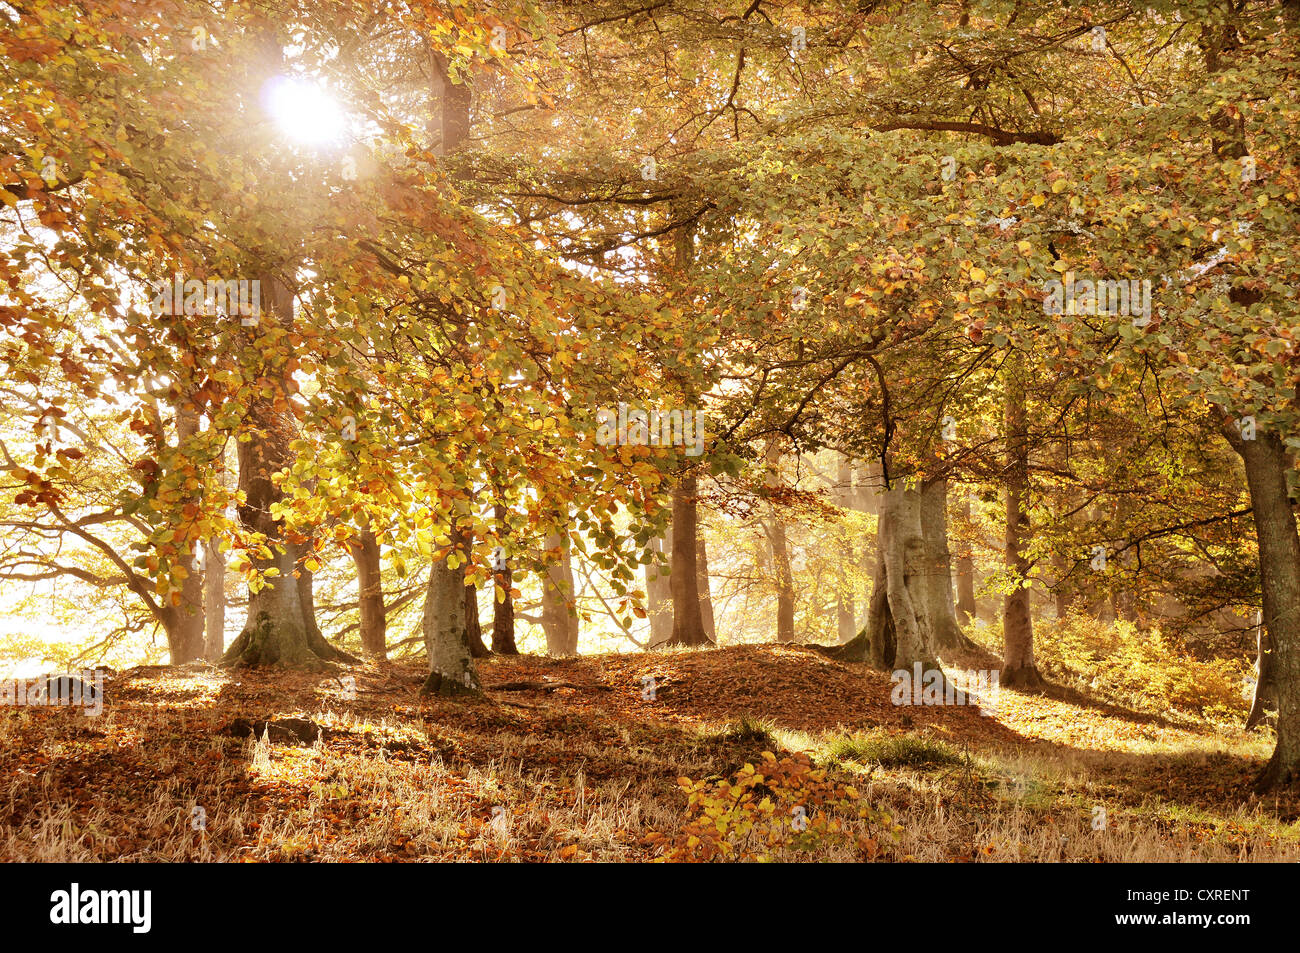 Couleurs d'automne d'or à Dawyck dans la région des Scottish Borders, Scotland, UK. Banque D'Images